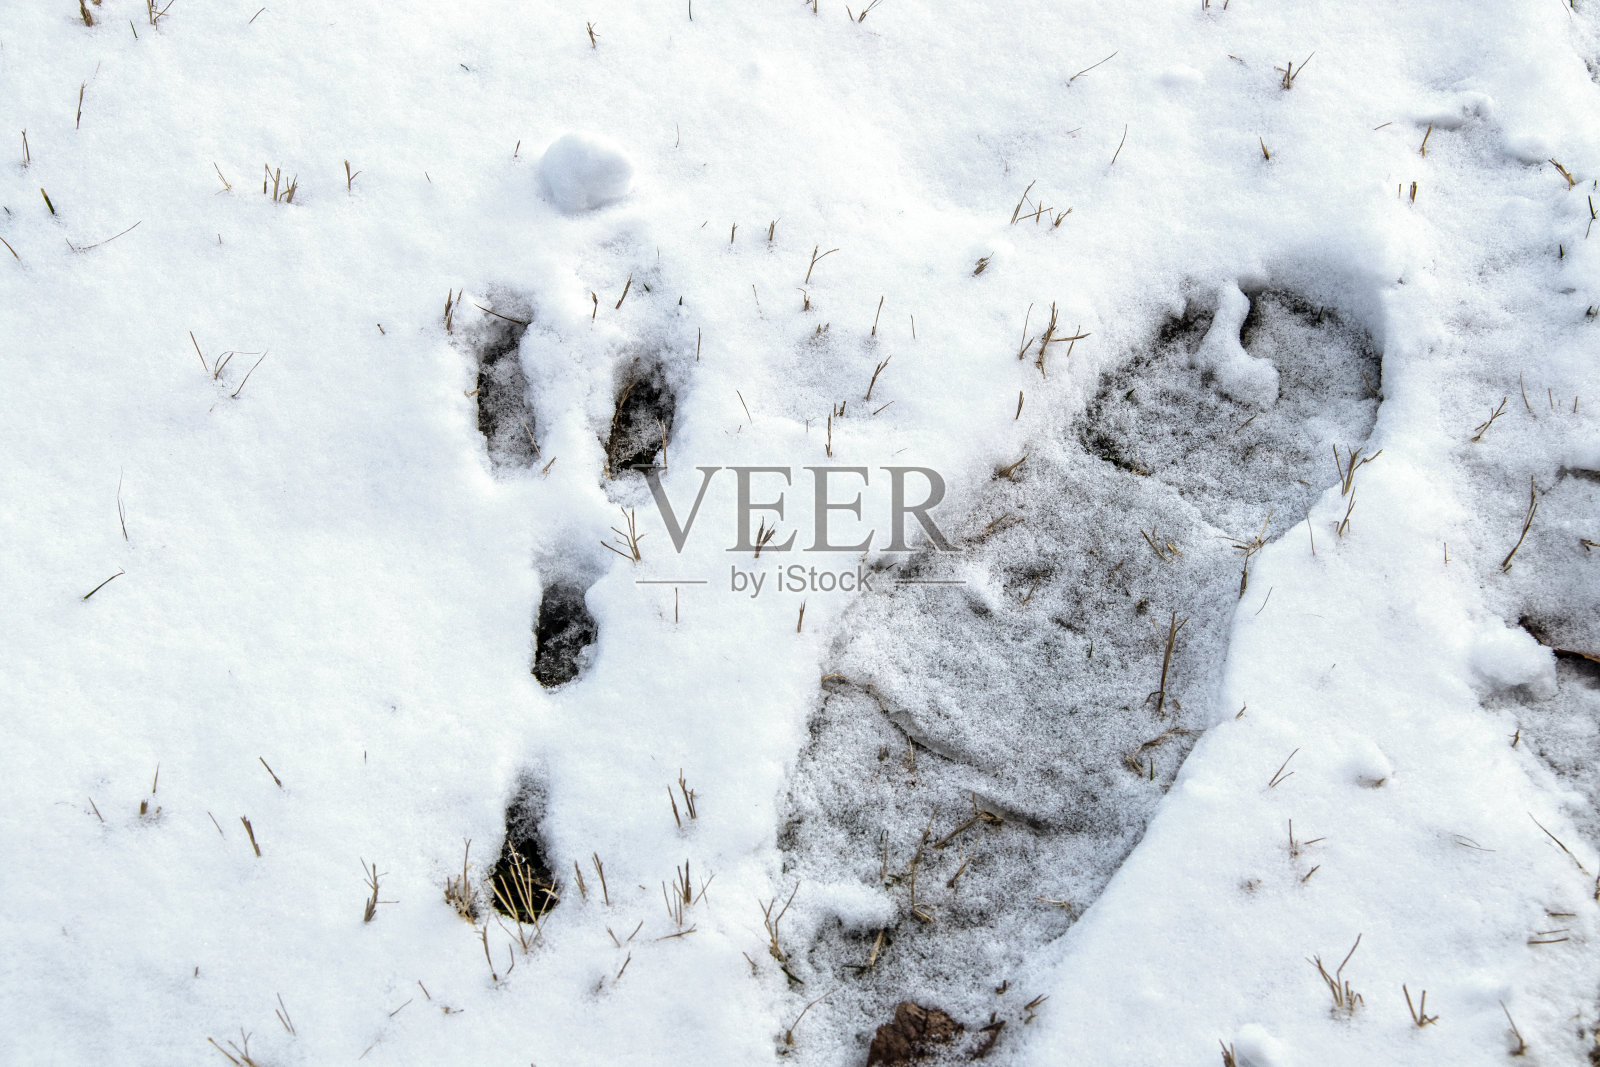 鞋子的脚印右边的兔子印在雪-特写从上到下的观点照片摄影图片